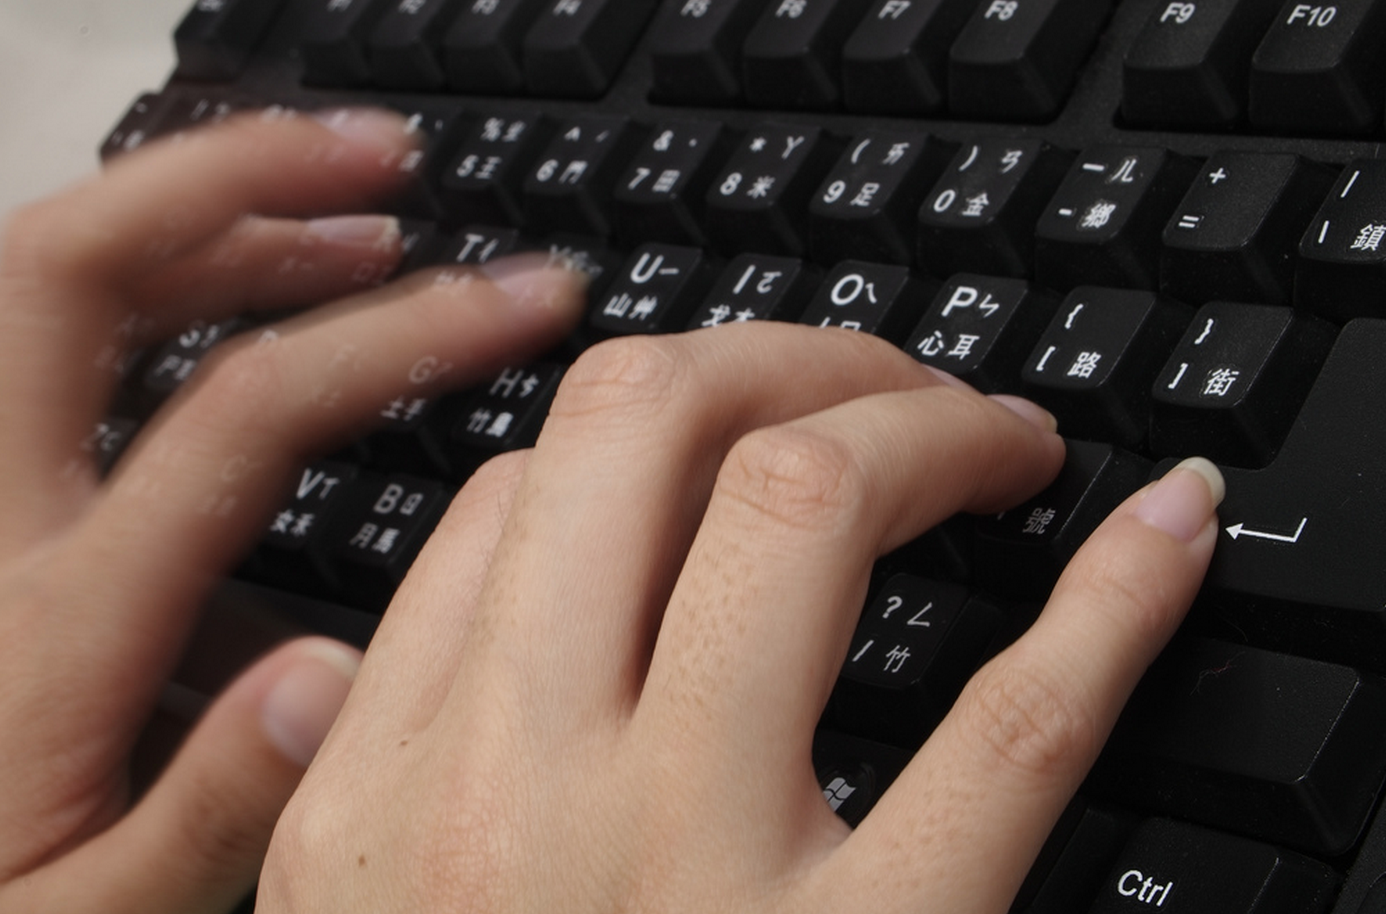 Page for typing. Пальцы на клавиатуре. Пальцы печатают на клавиатуре. Компьютерная клавиатура с пальцами. Руки на клавиатуре.